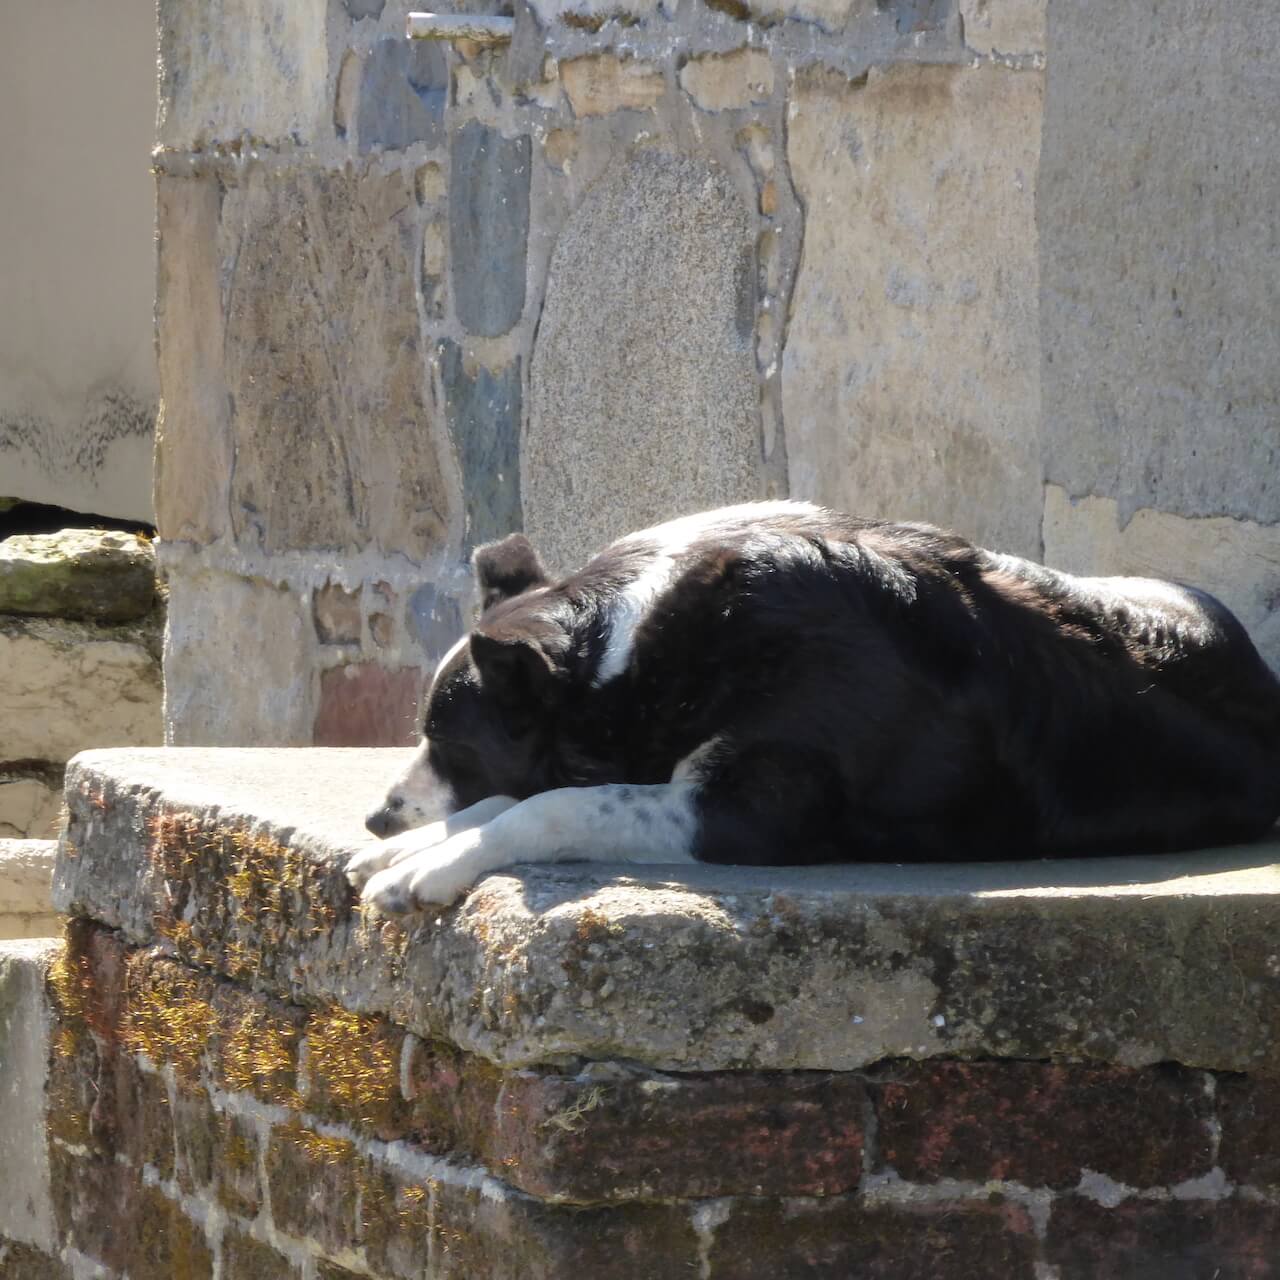 Sleeping dog near Dalvennan